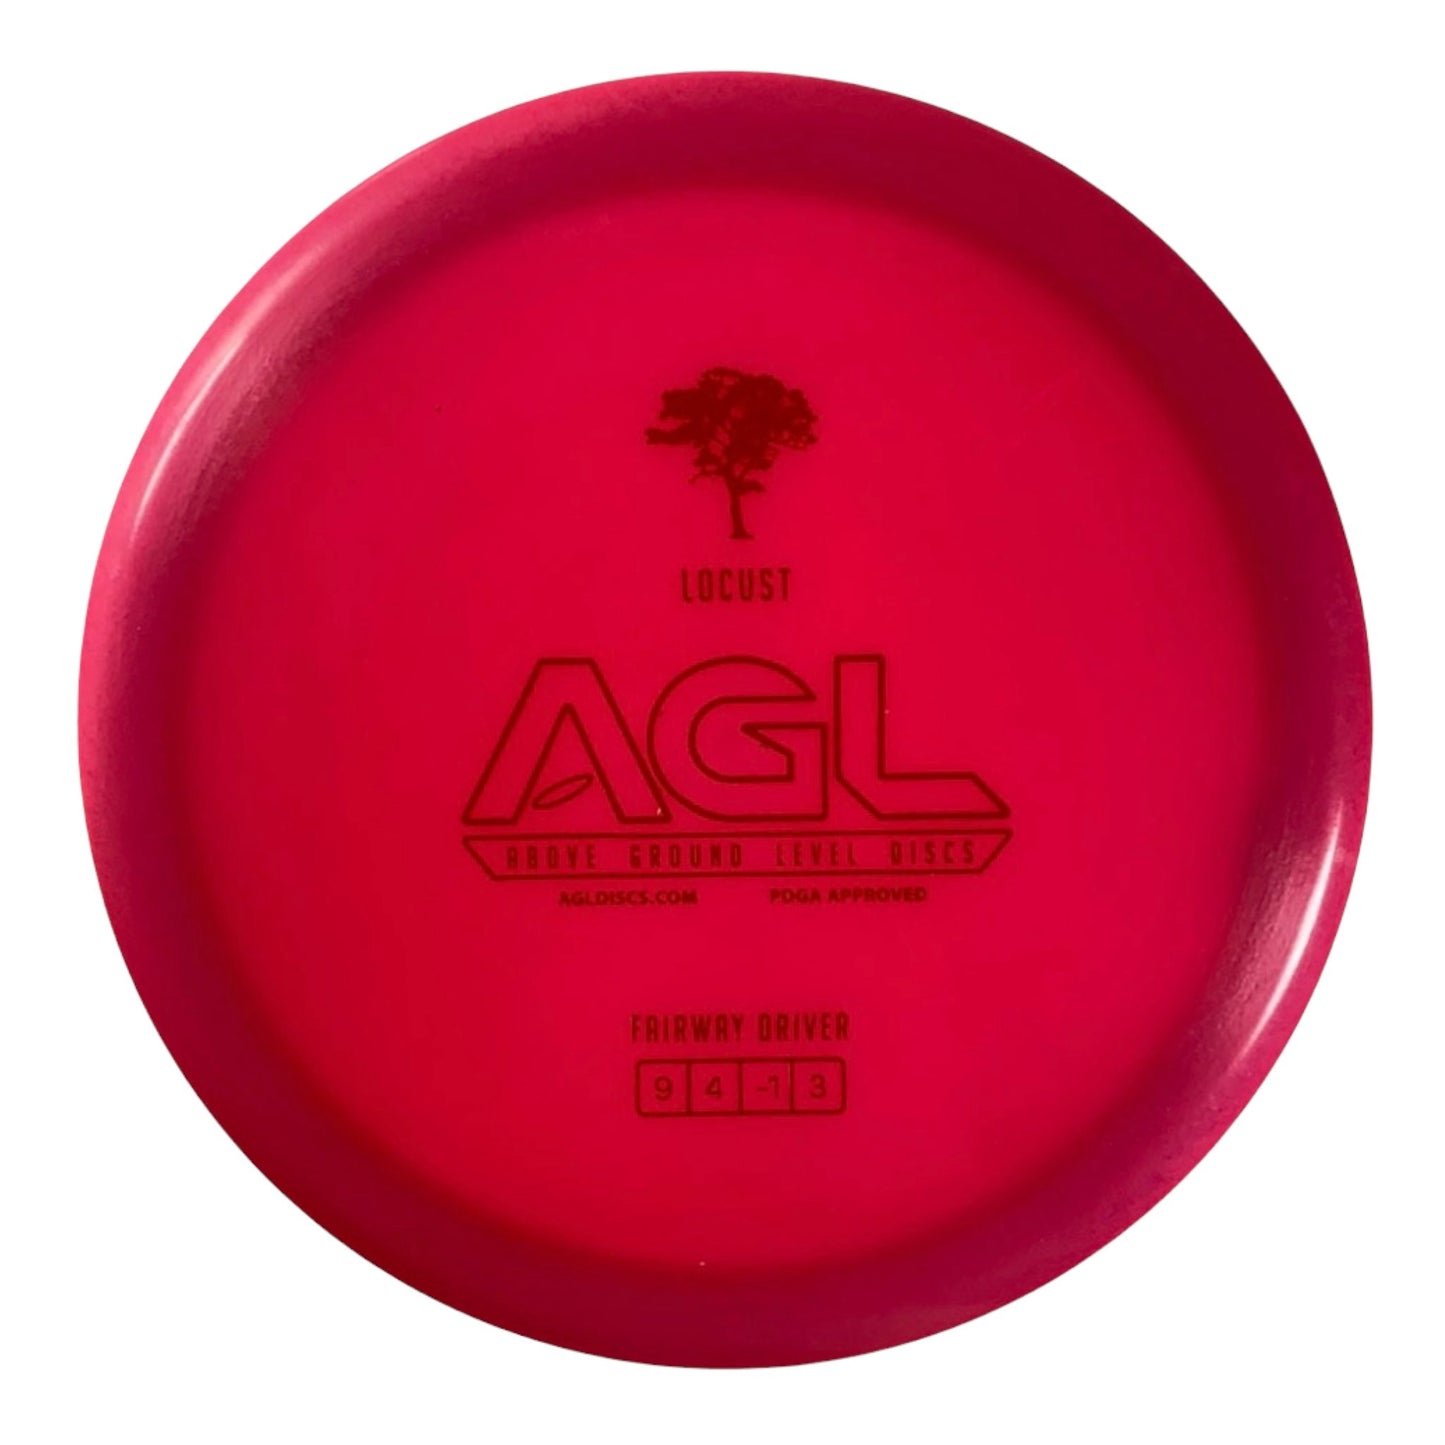 Above Ground Level Locust | Alpine | Pink/Red 175g Disc Golf